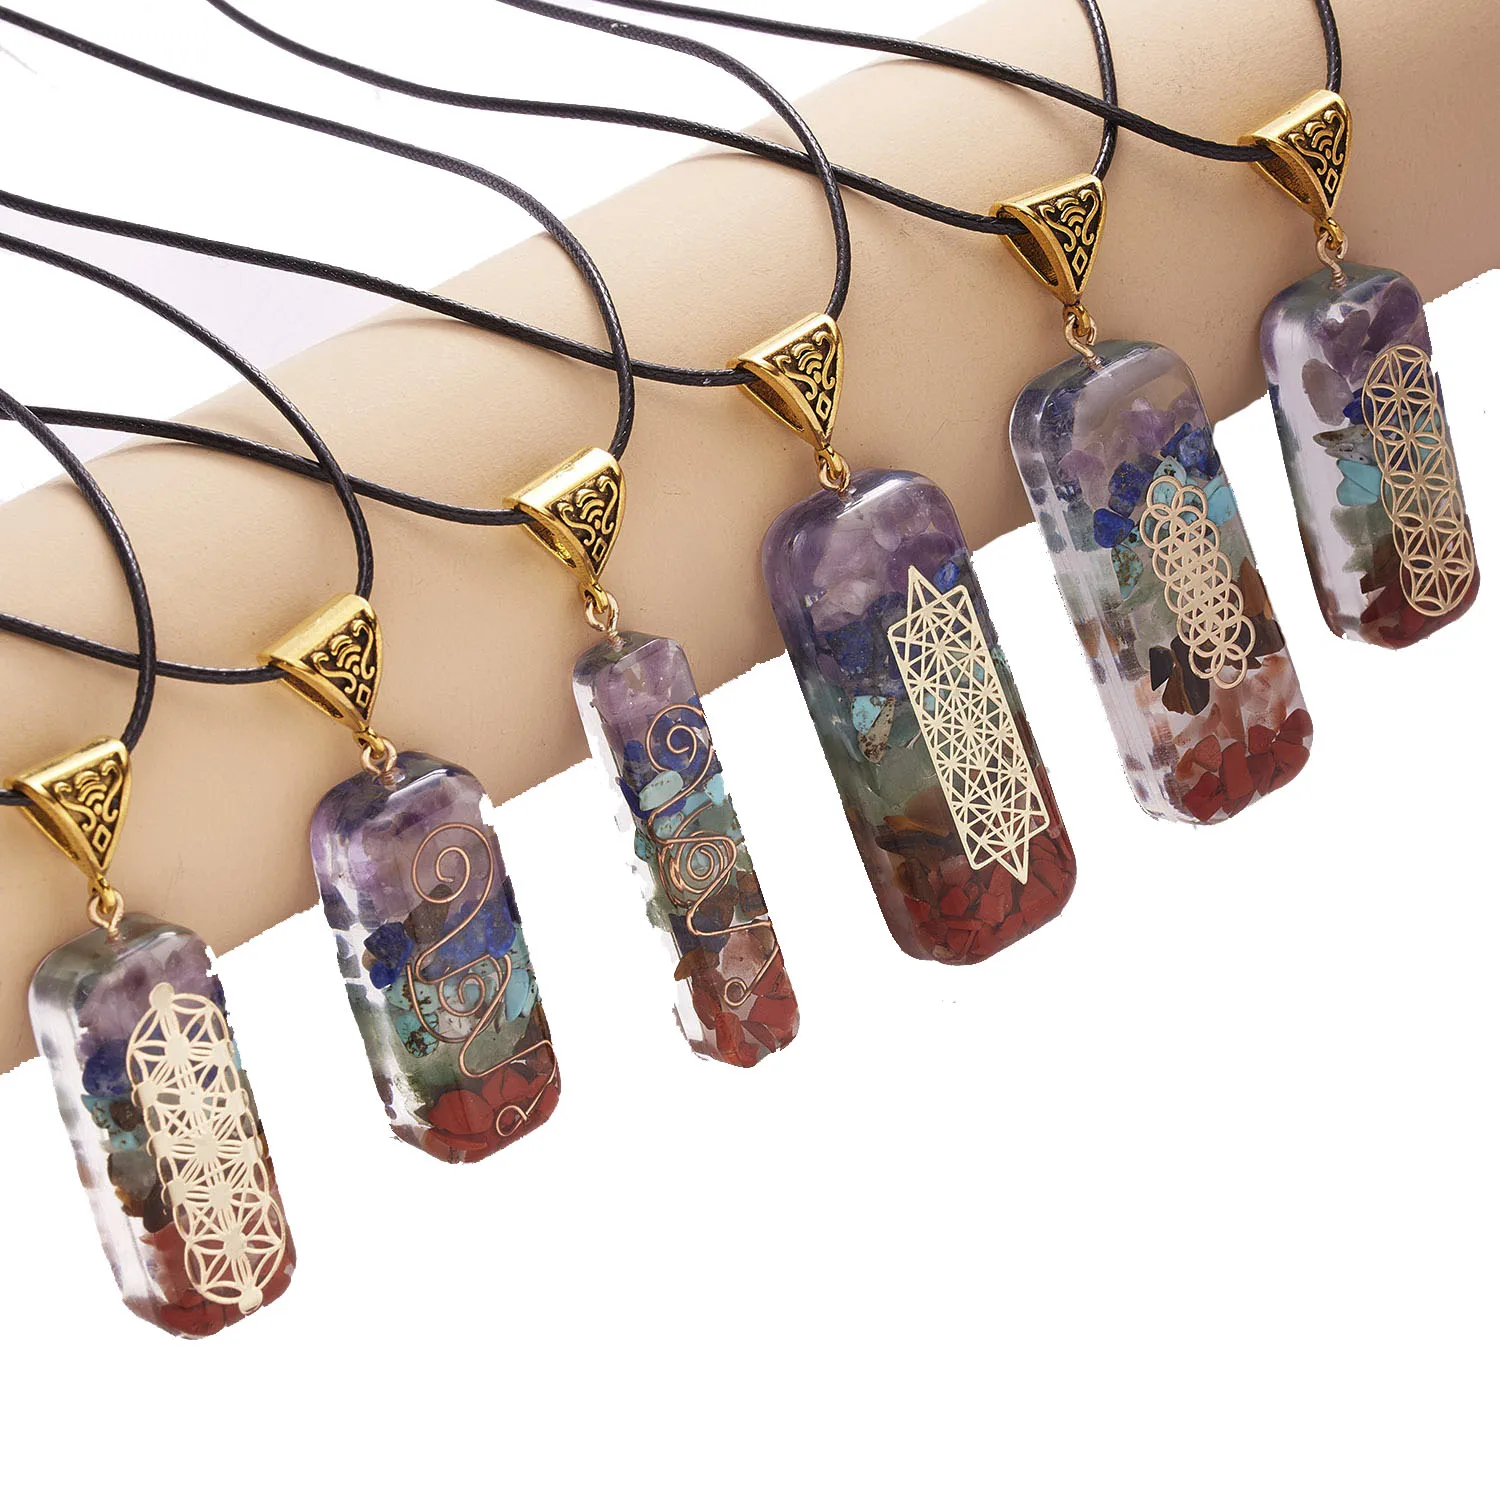 

New 7 Chakra Orgone Energy Healing Crystal stone necklace Sri Yantra Sacred Geometry Om Rectangle Pendant Meditation Necklace